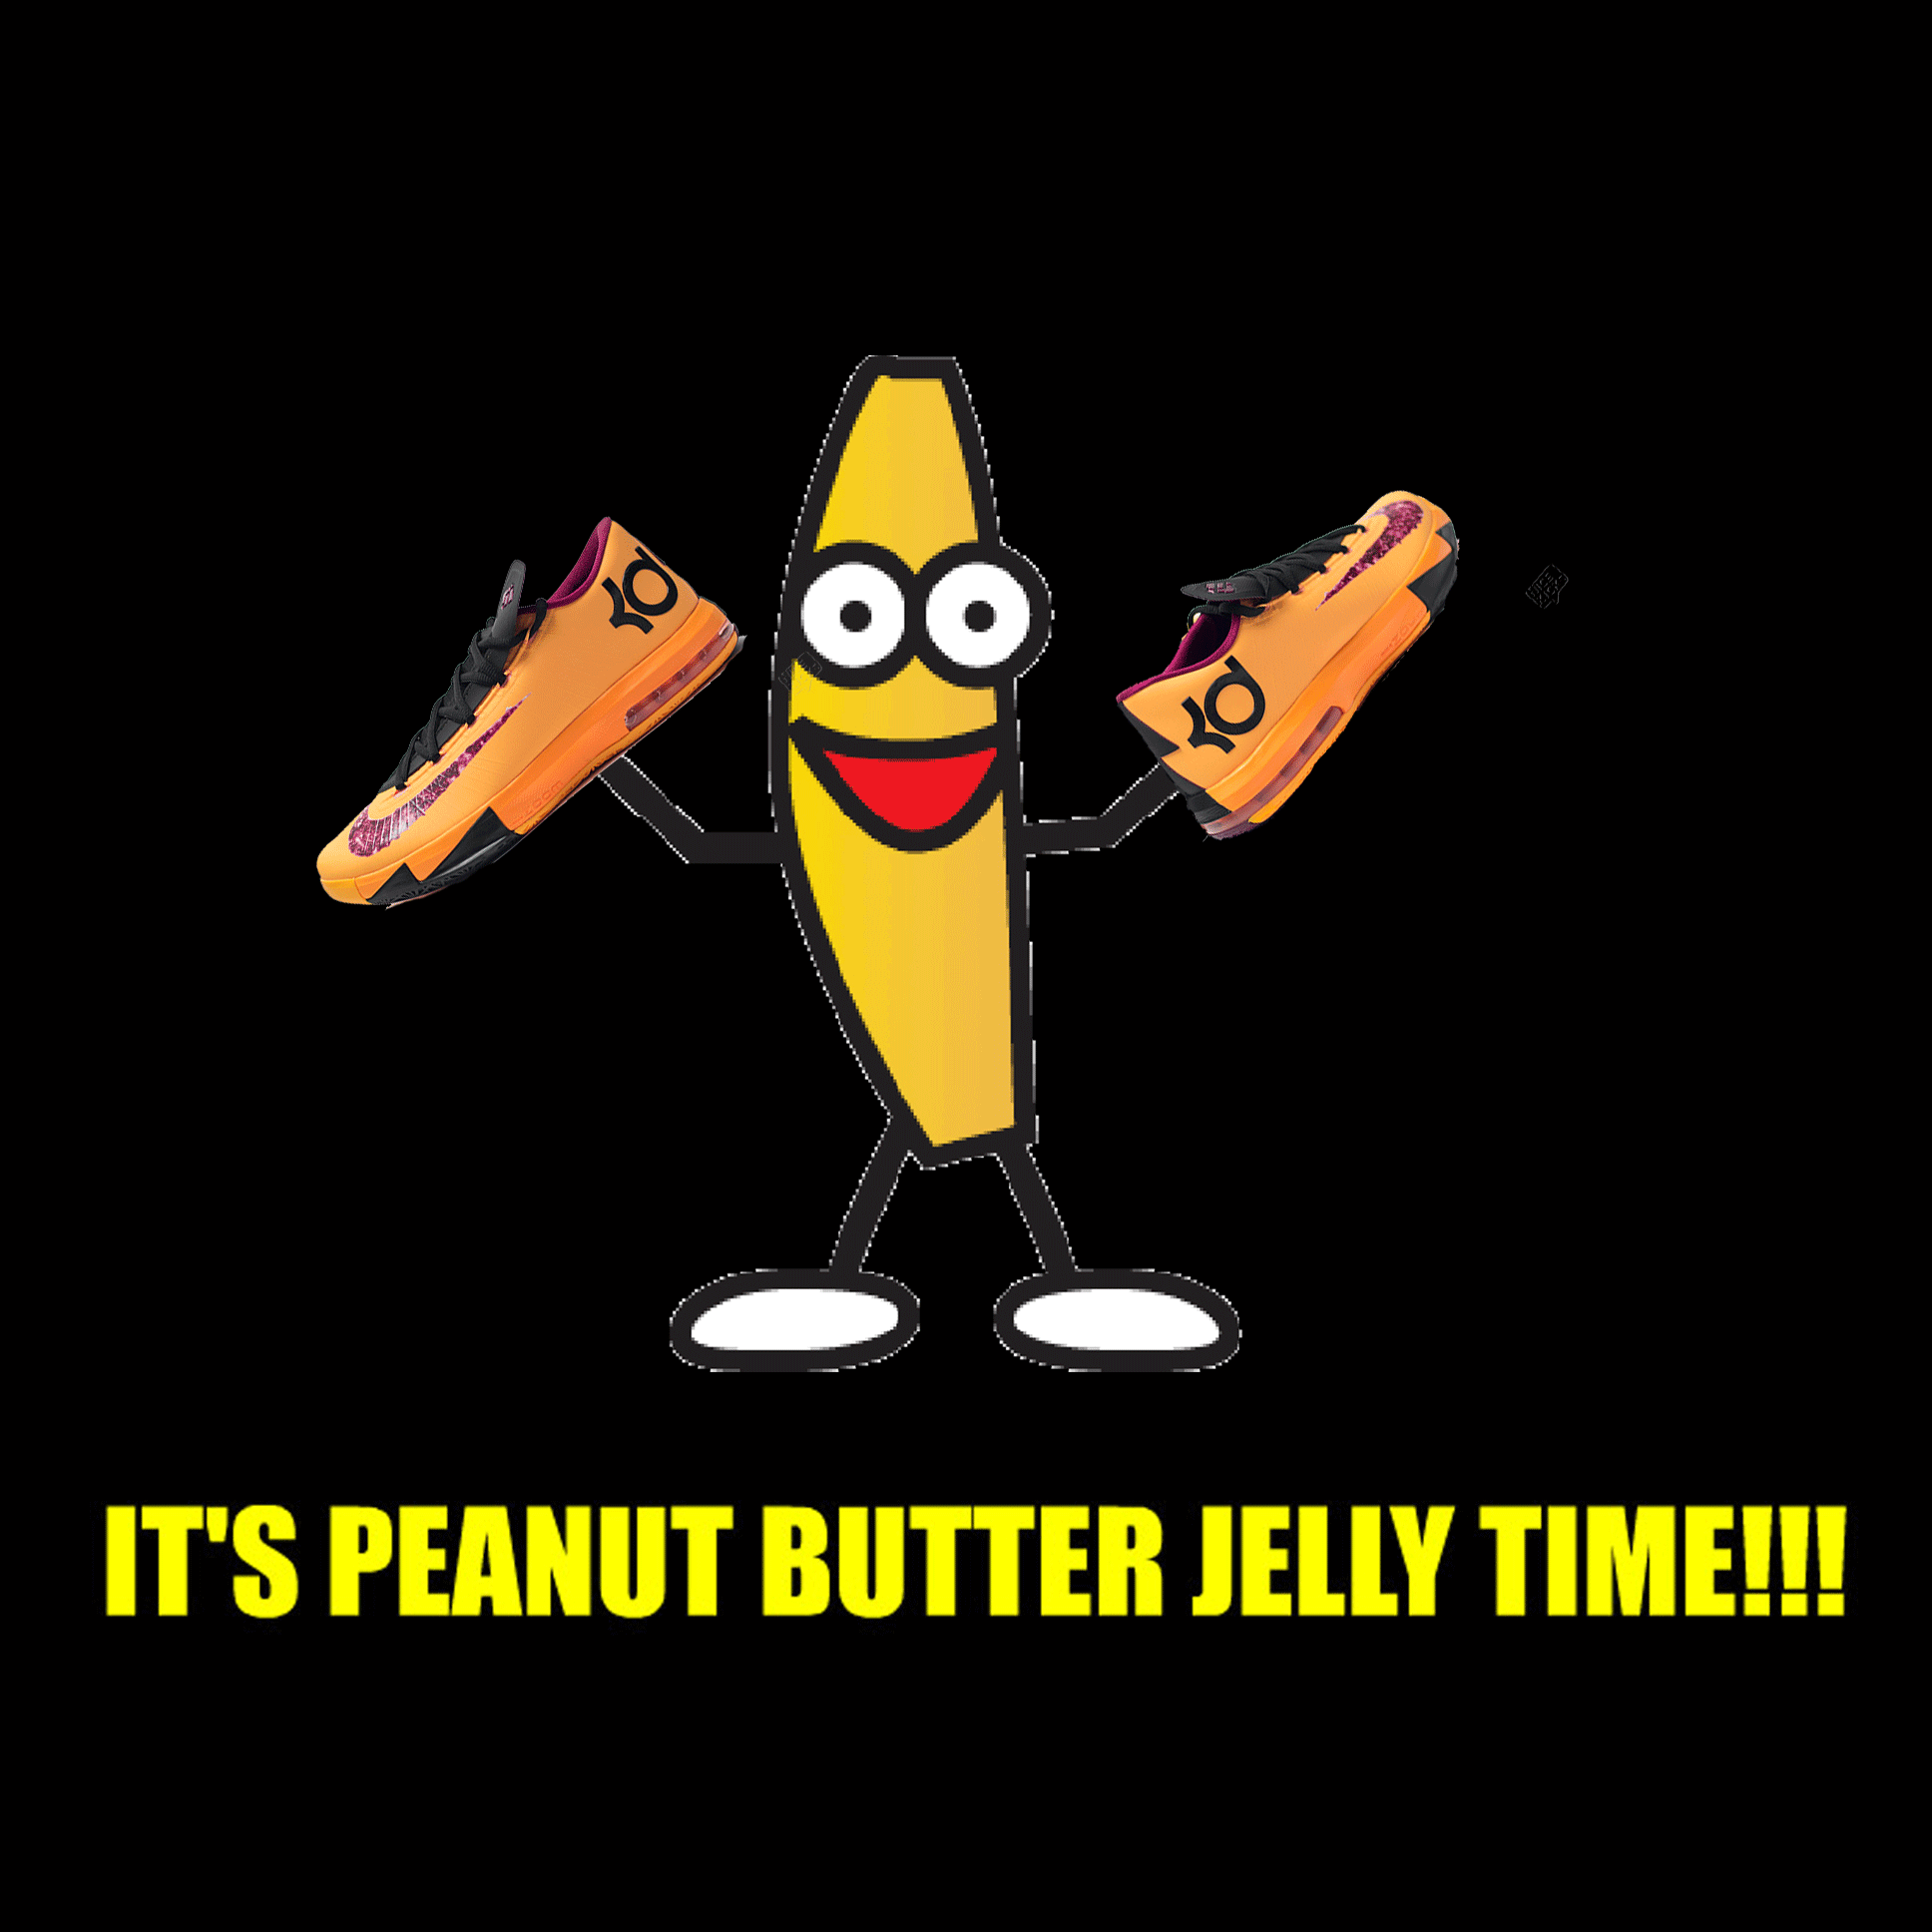 Penut butter jelly time lyrics